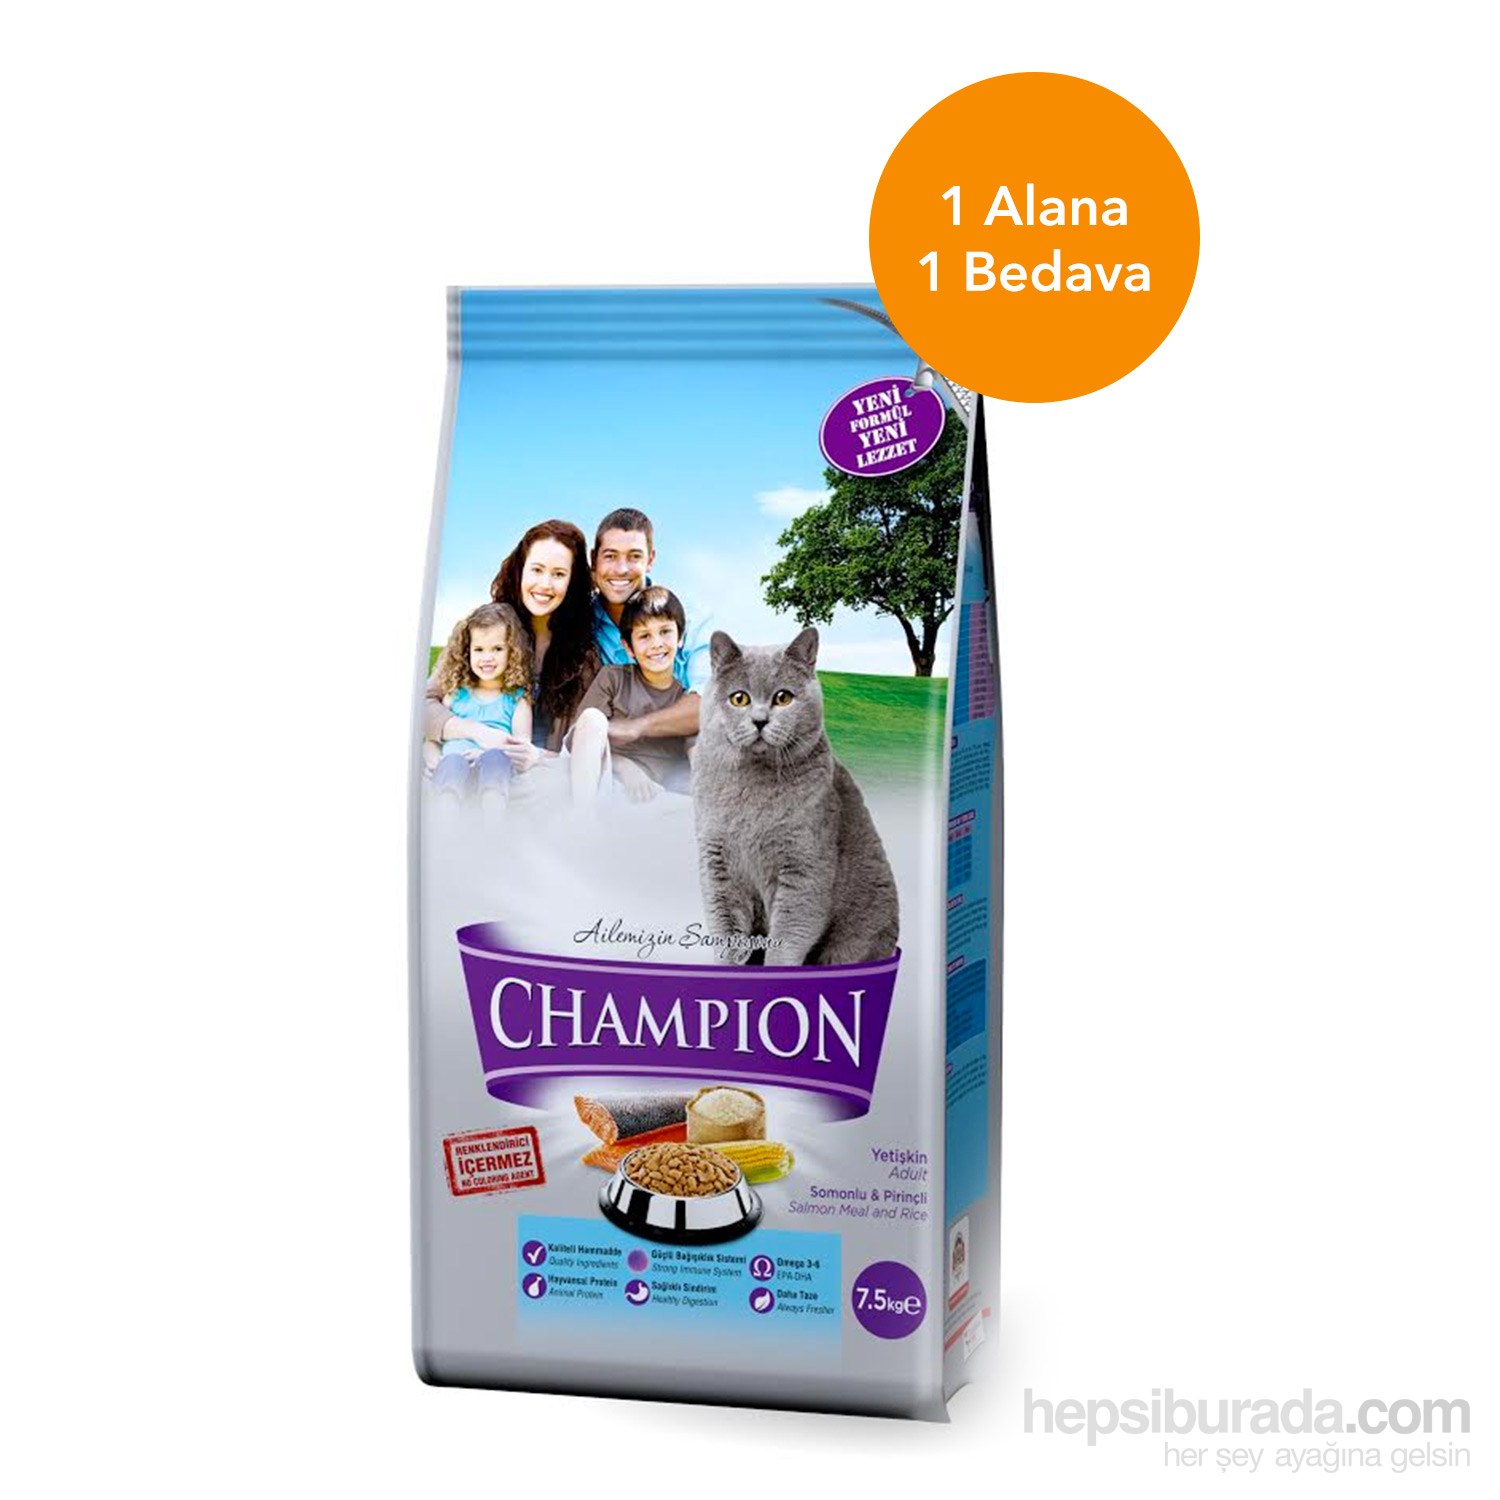 Champion Somonlu & Pirinçli Yetişkin Kedi Maması 7,5 Kg 1 alana 1 bedava